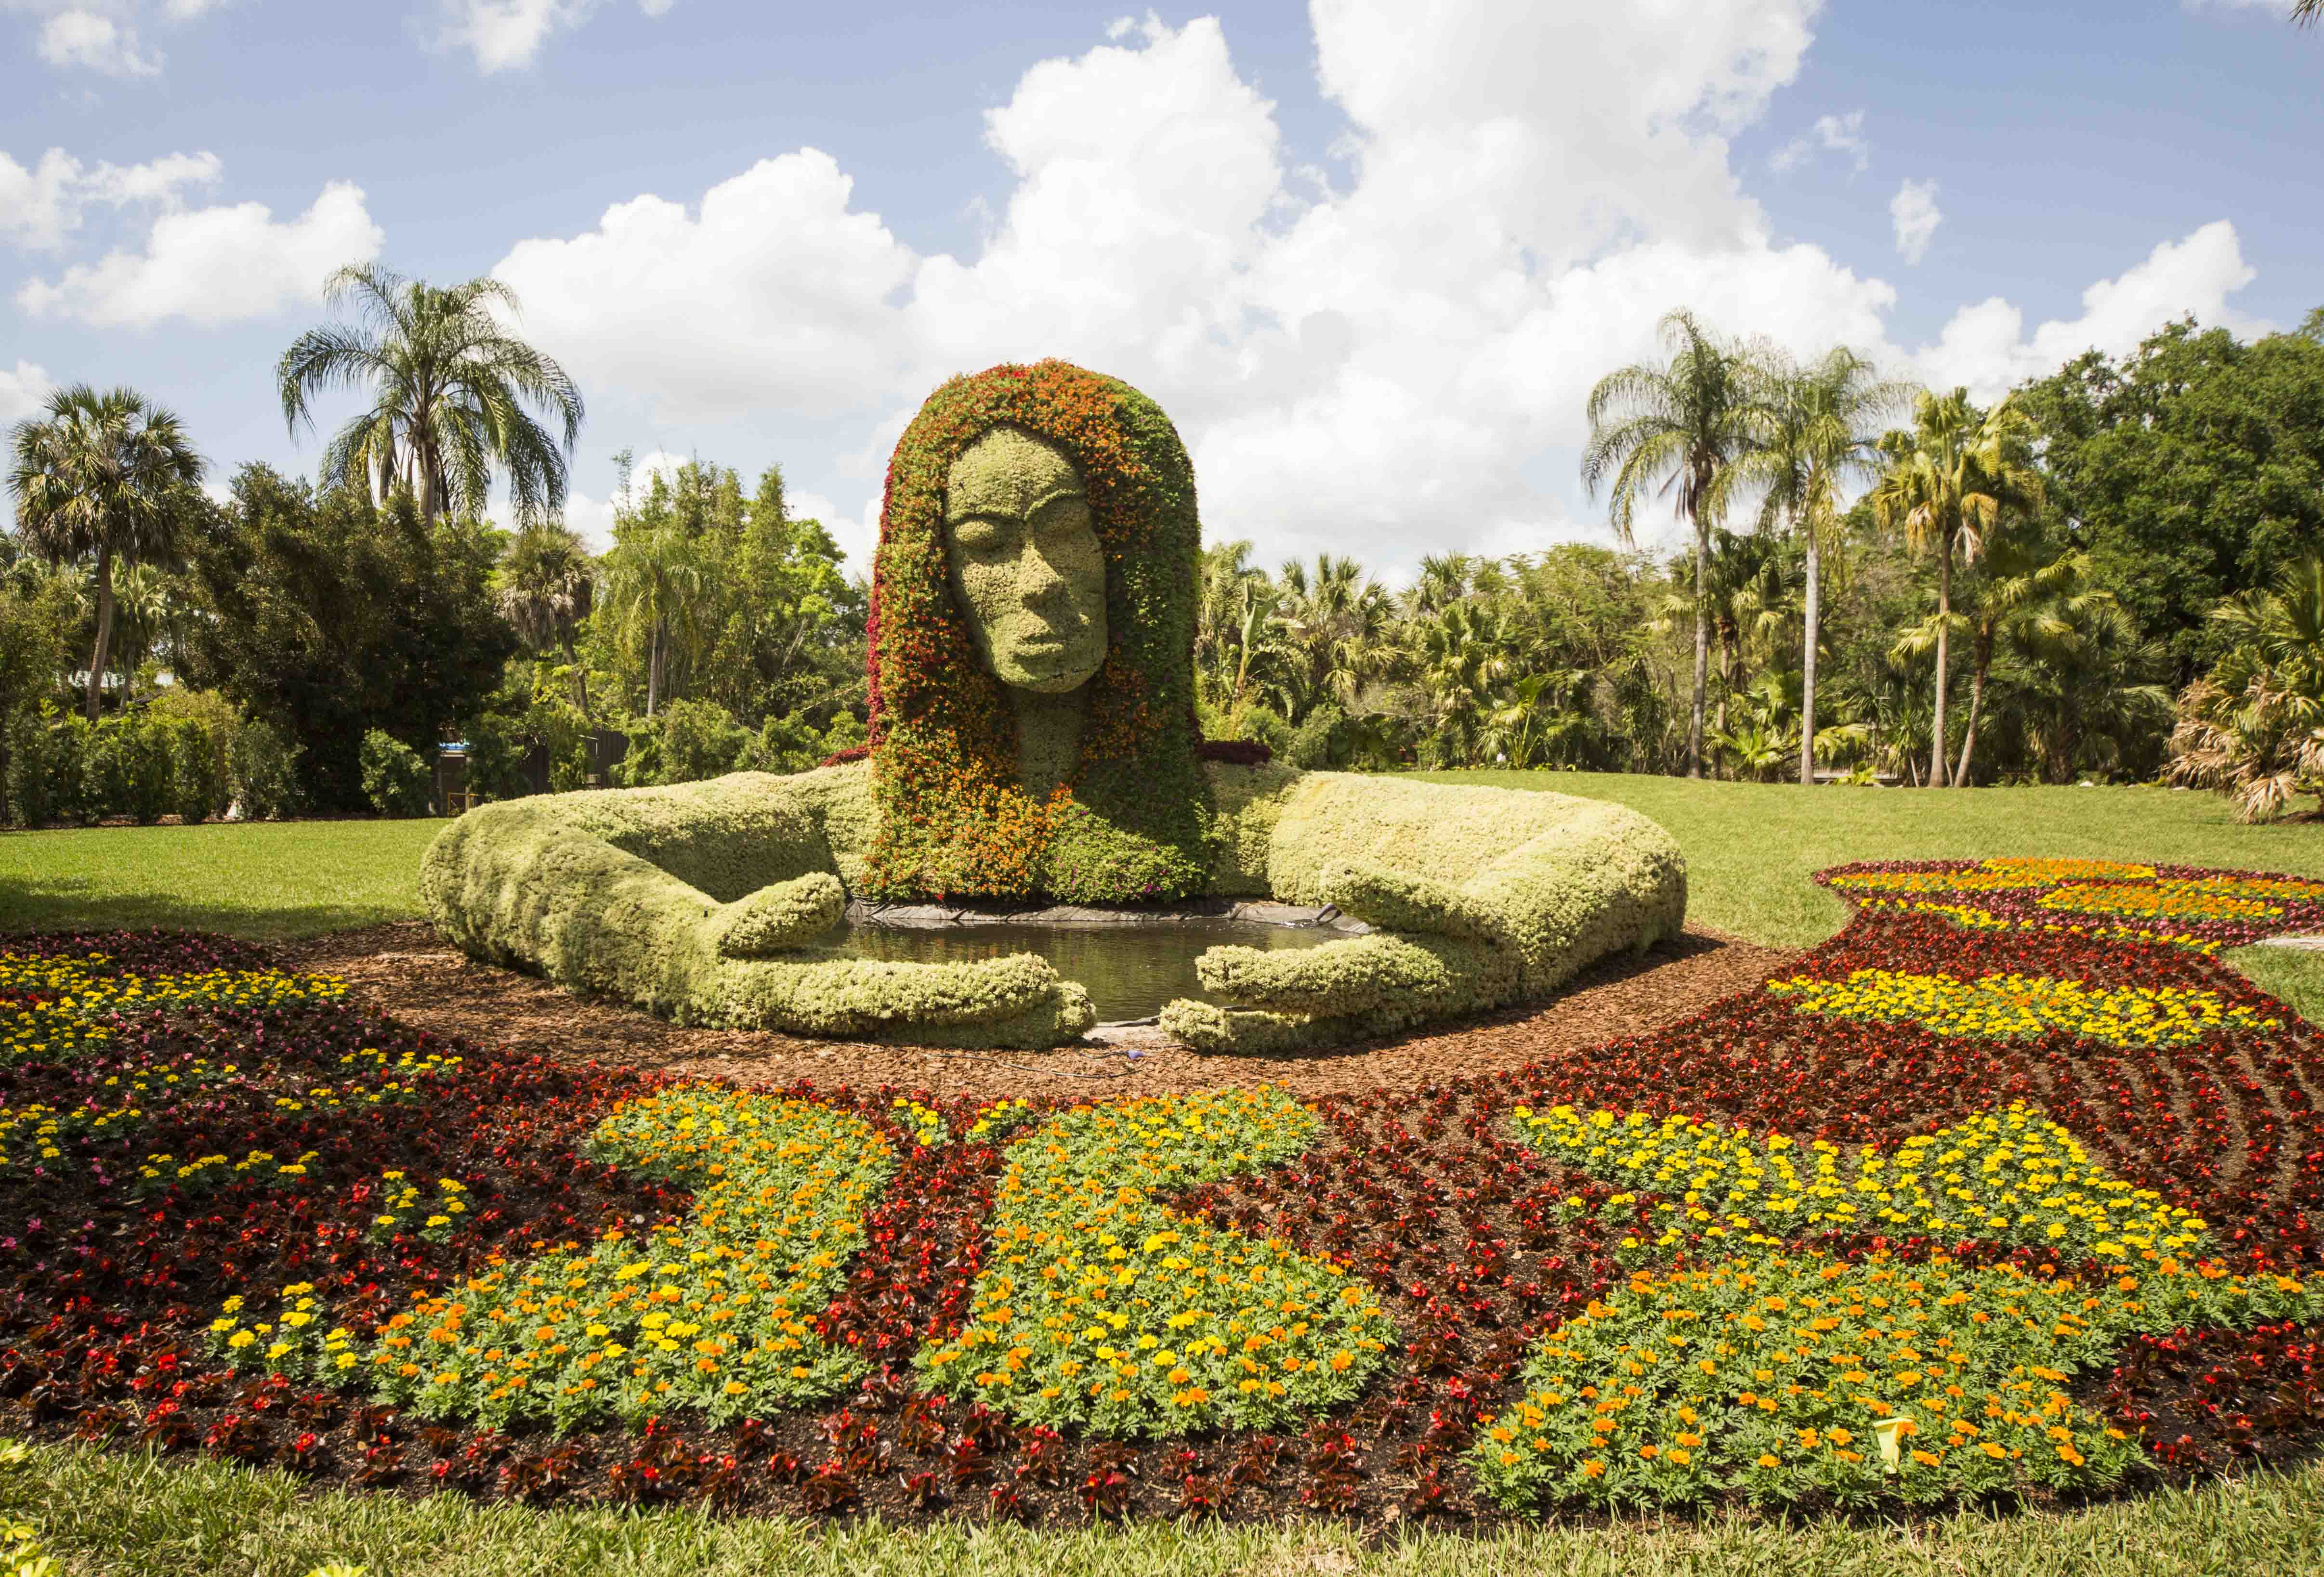 Busch Gardens Tampa Food & Wine Festival Gardening Masterpieces - On